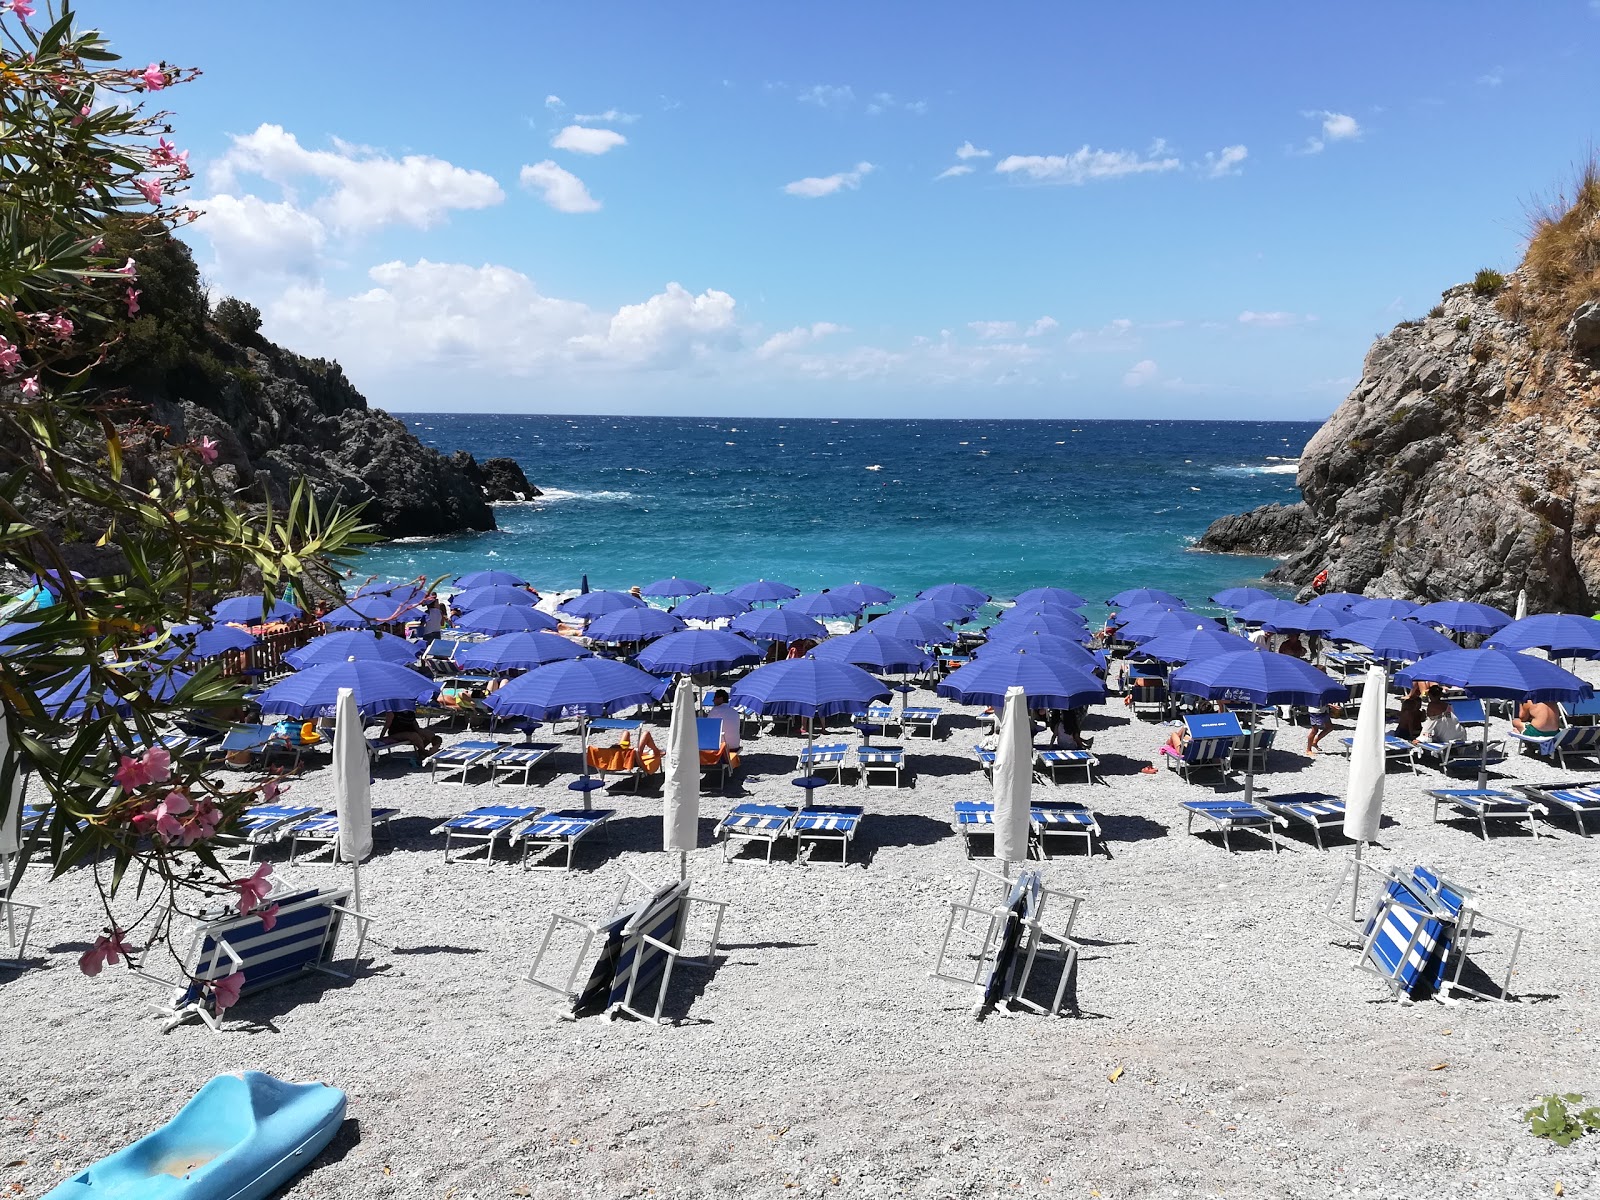 Foto von Spiaggia D' A Scala mit winzige bucht